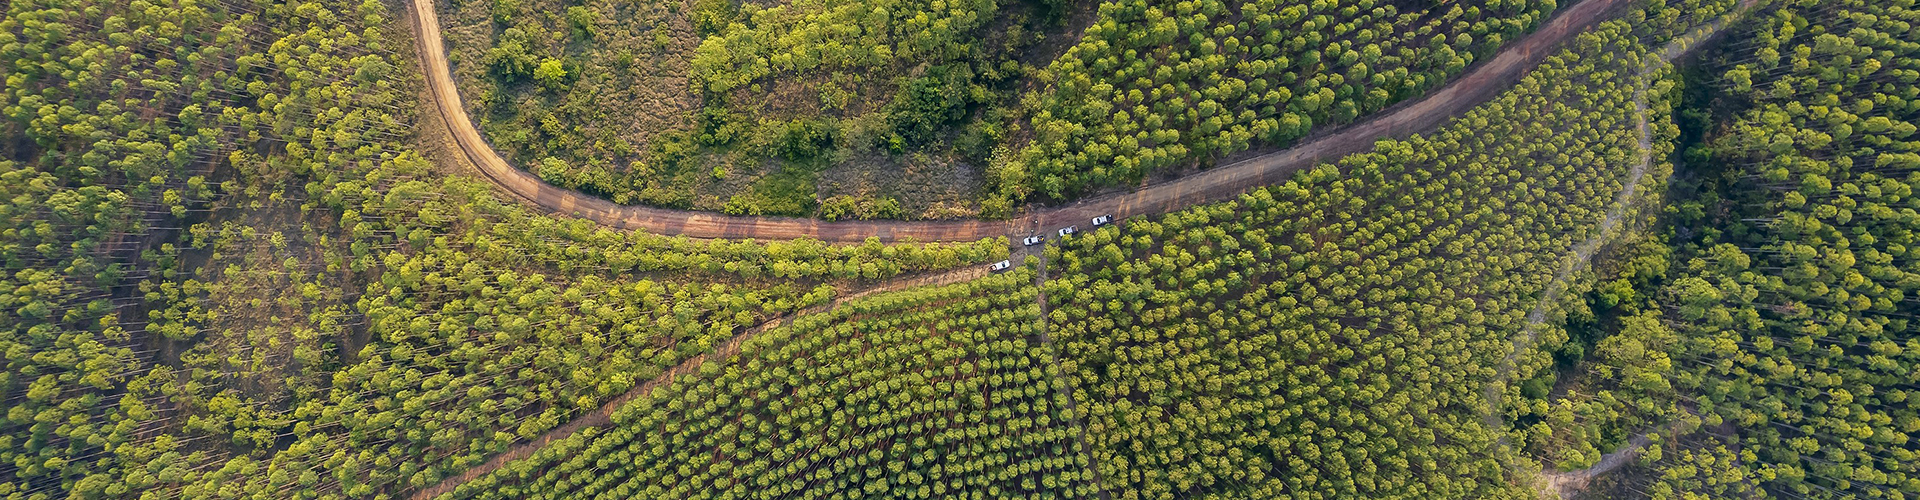 Plantación forestal en Colombia / Forestry plantation in Colombia